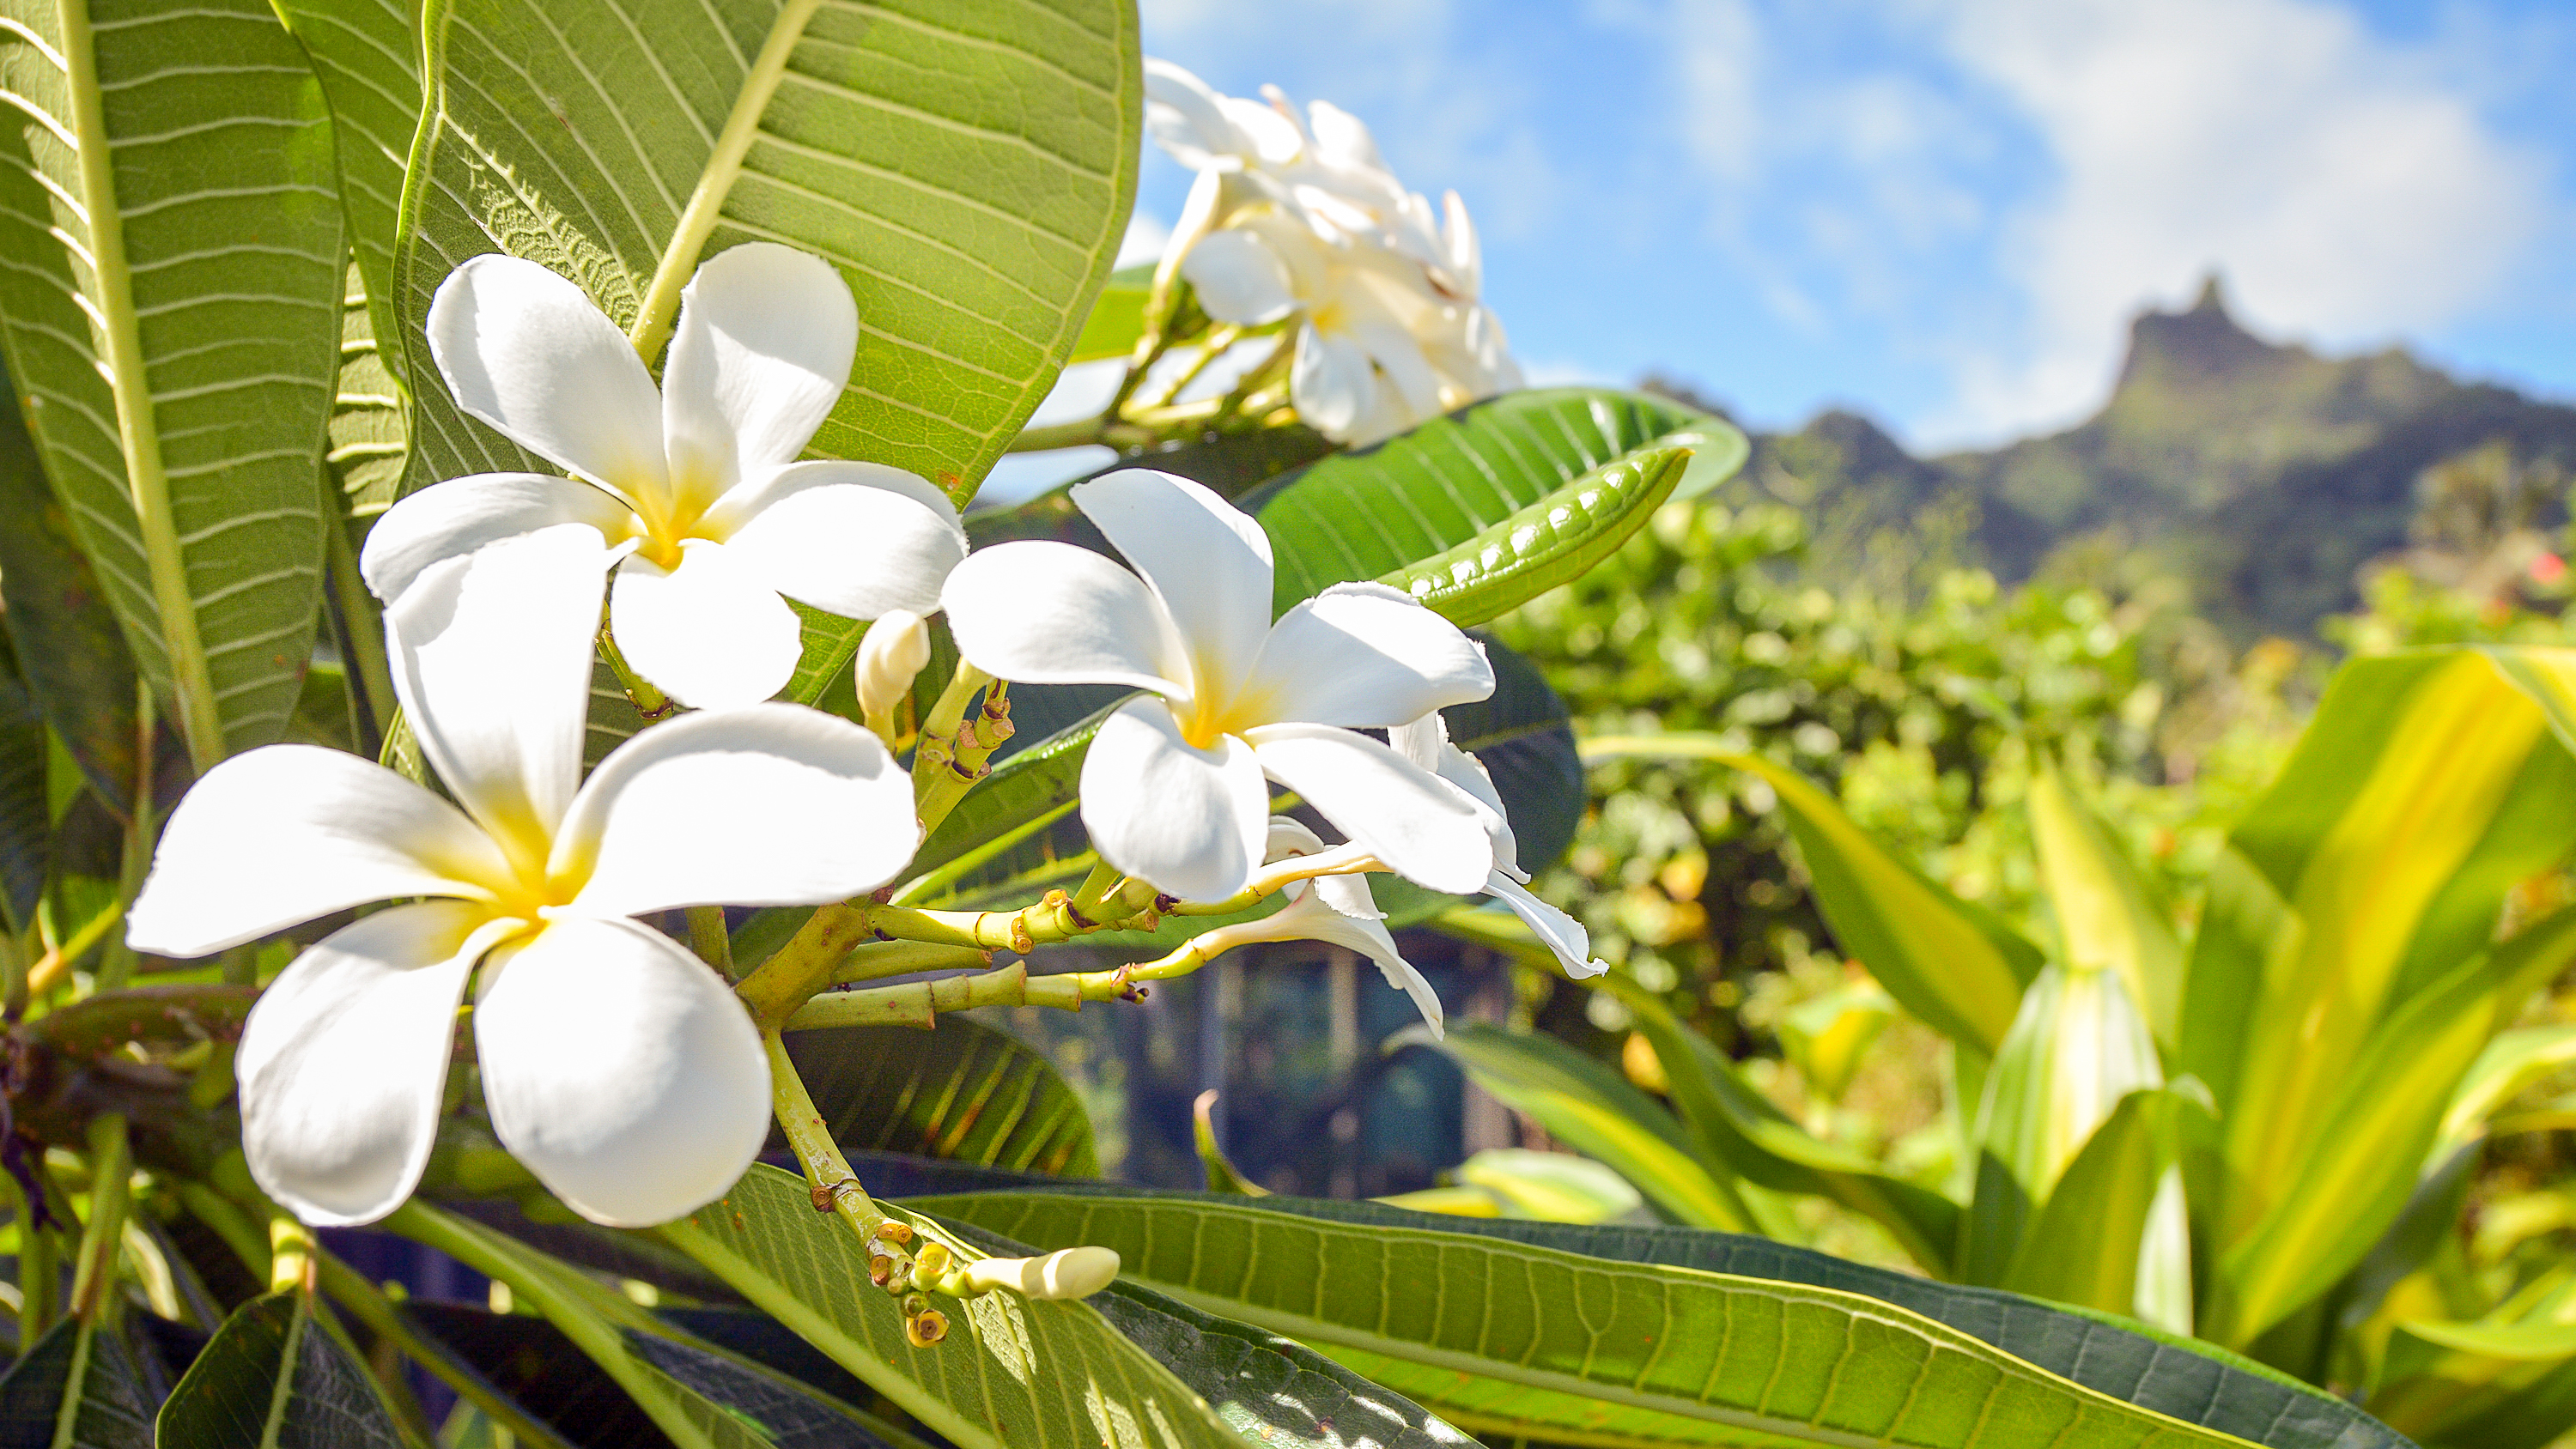 De smukke frangipani-blomster findes overalt i Stillehavet, og de sættes ofte bag øret